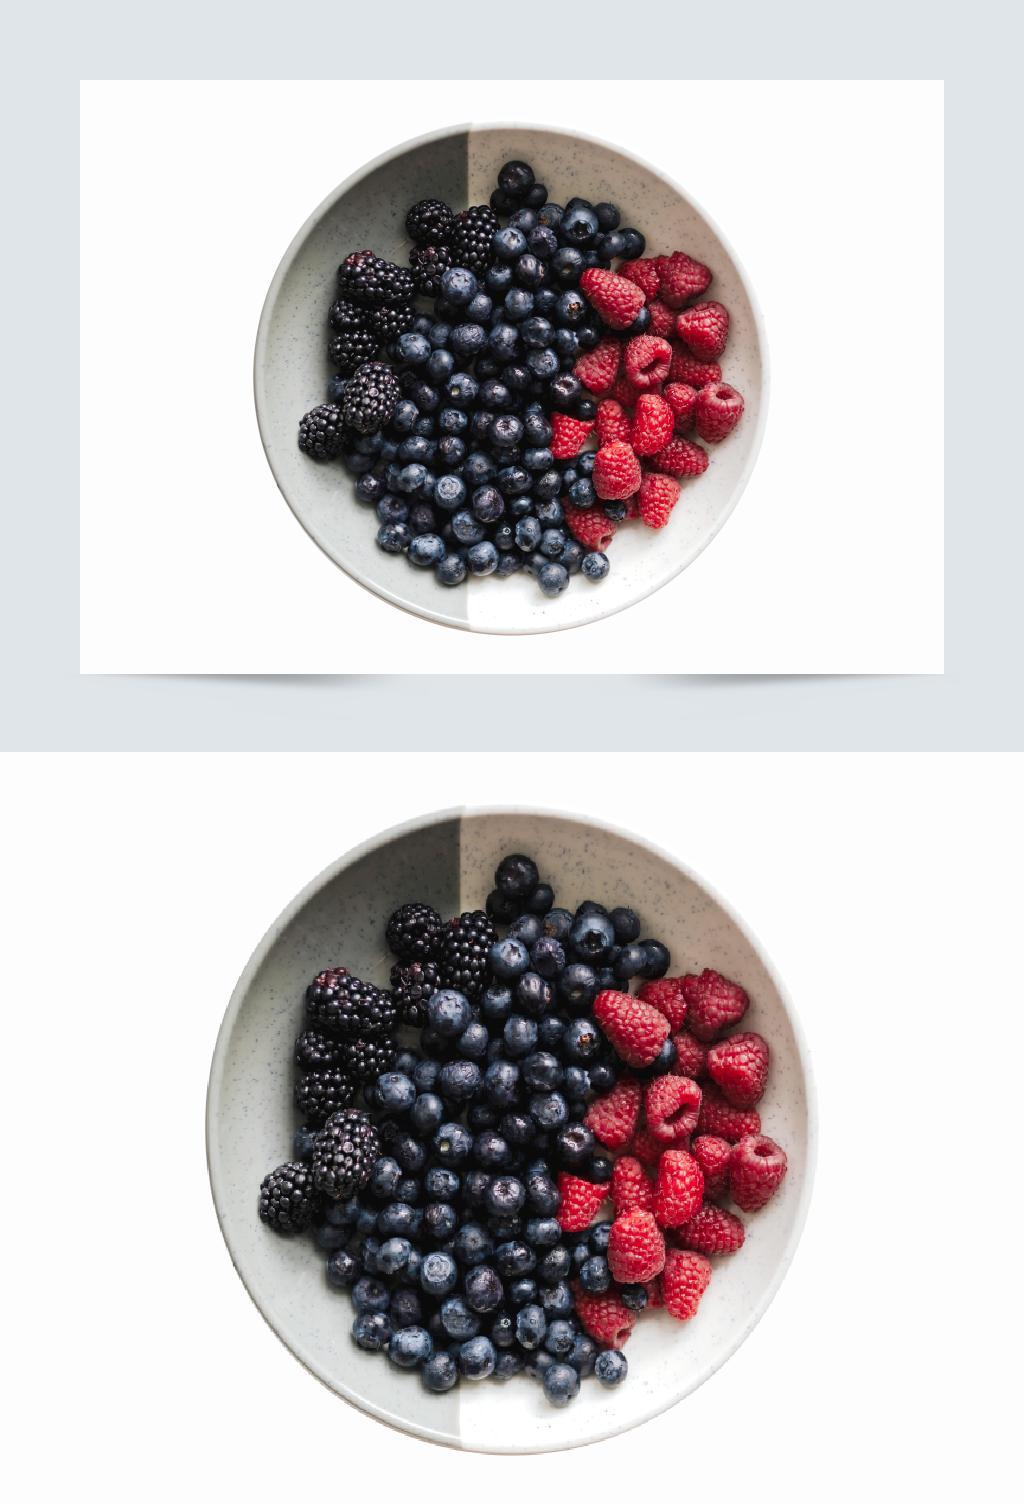 桑葚蓝莓树莓果盘